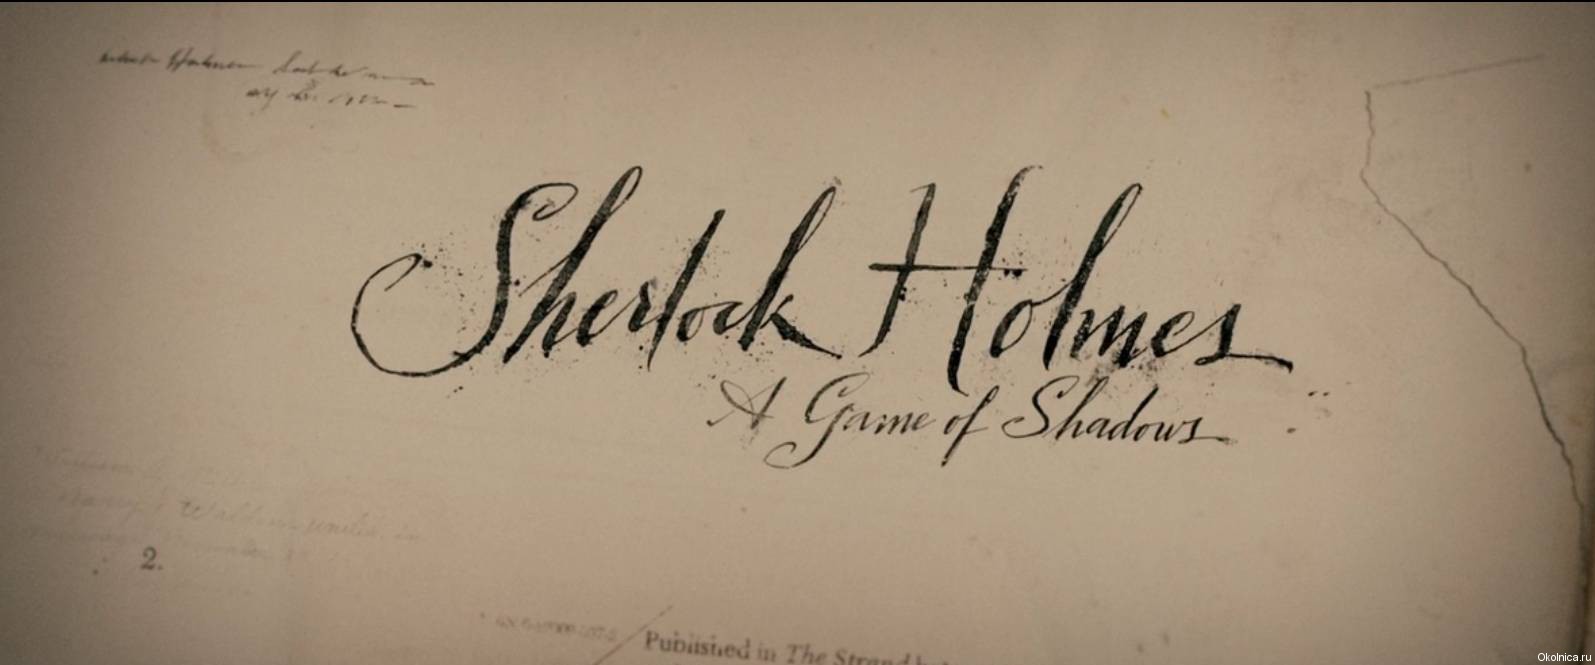 Sherlock_Holmes_game_of_shadows_017_cr_cr_cr